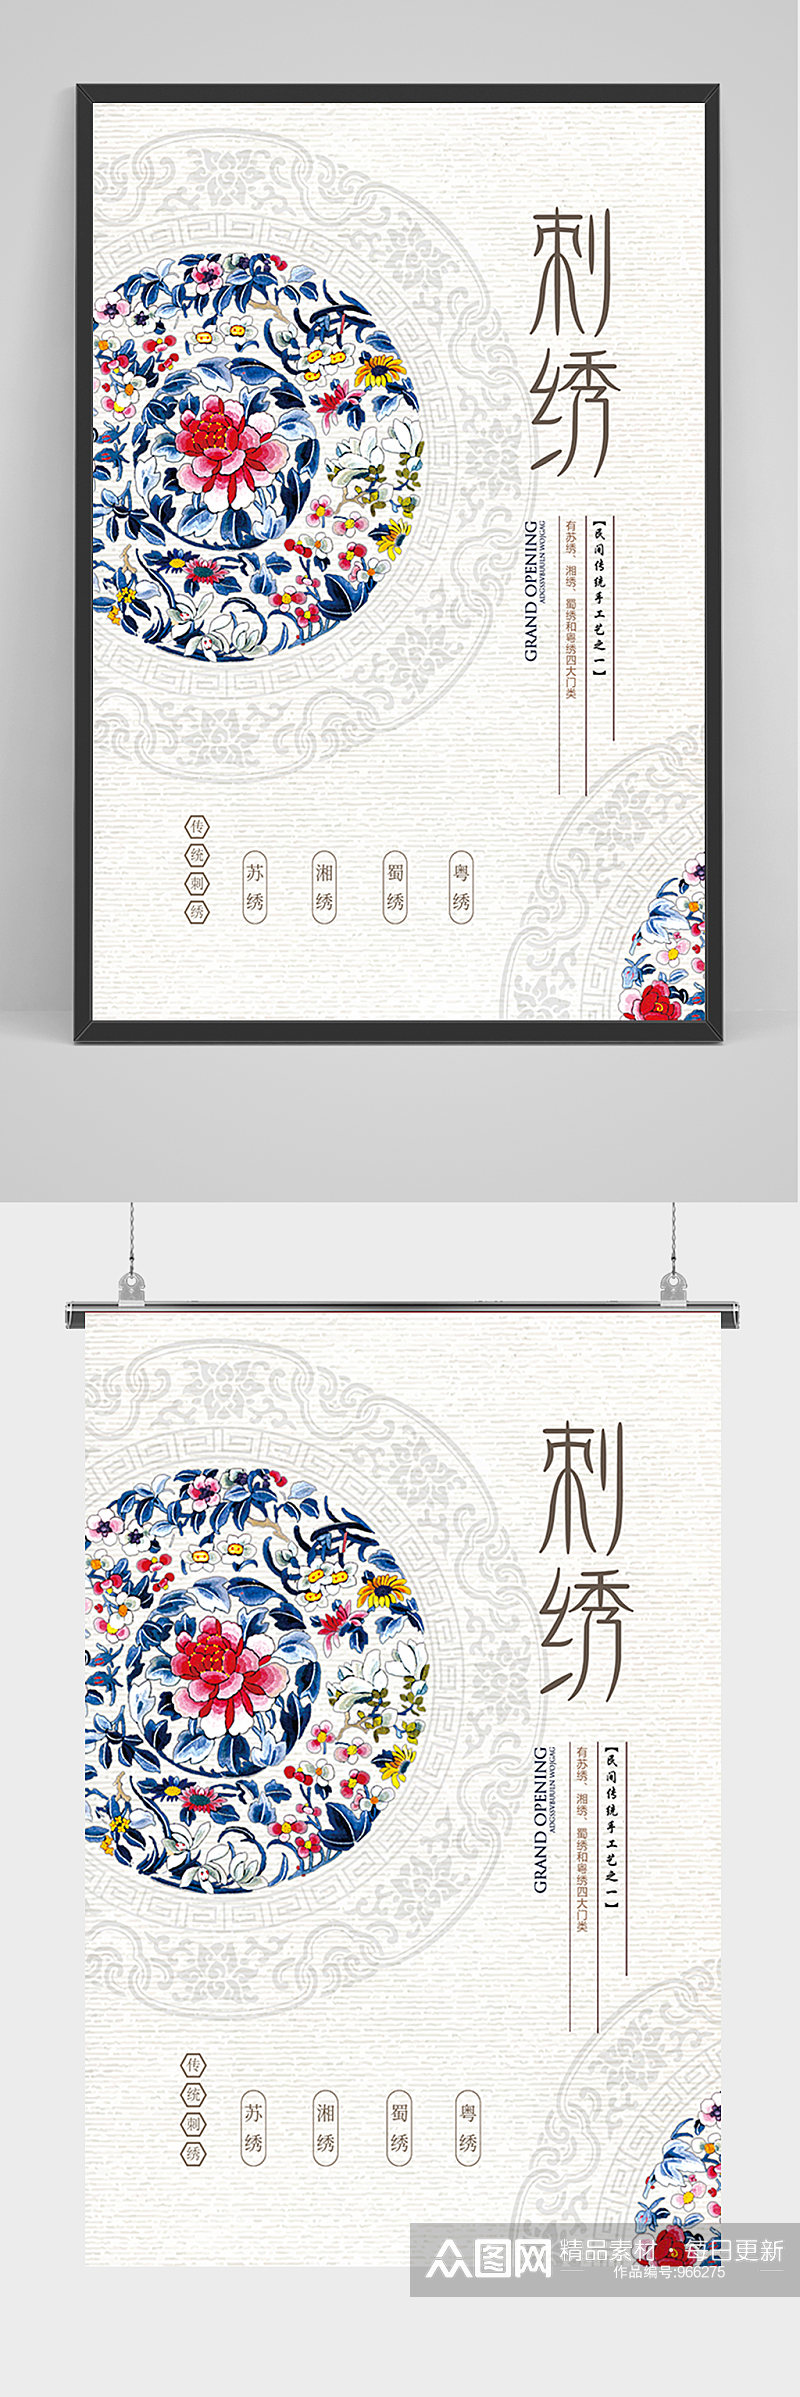 简约中国风刺绣海报素材